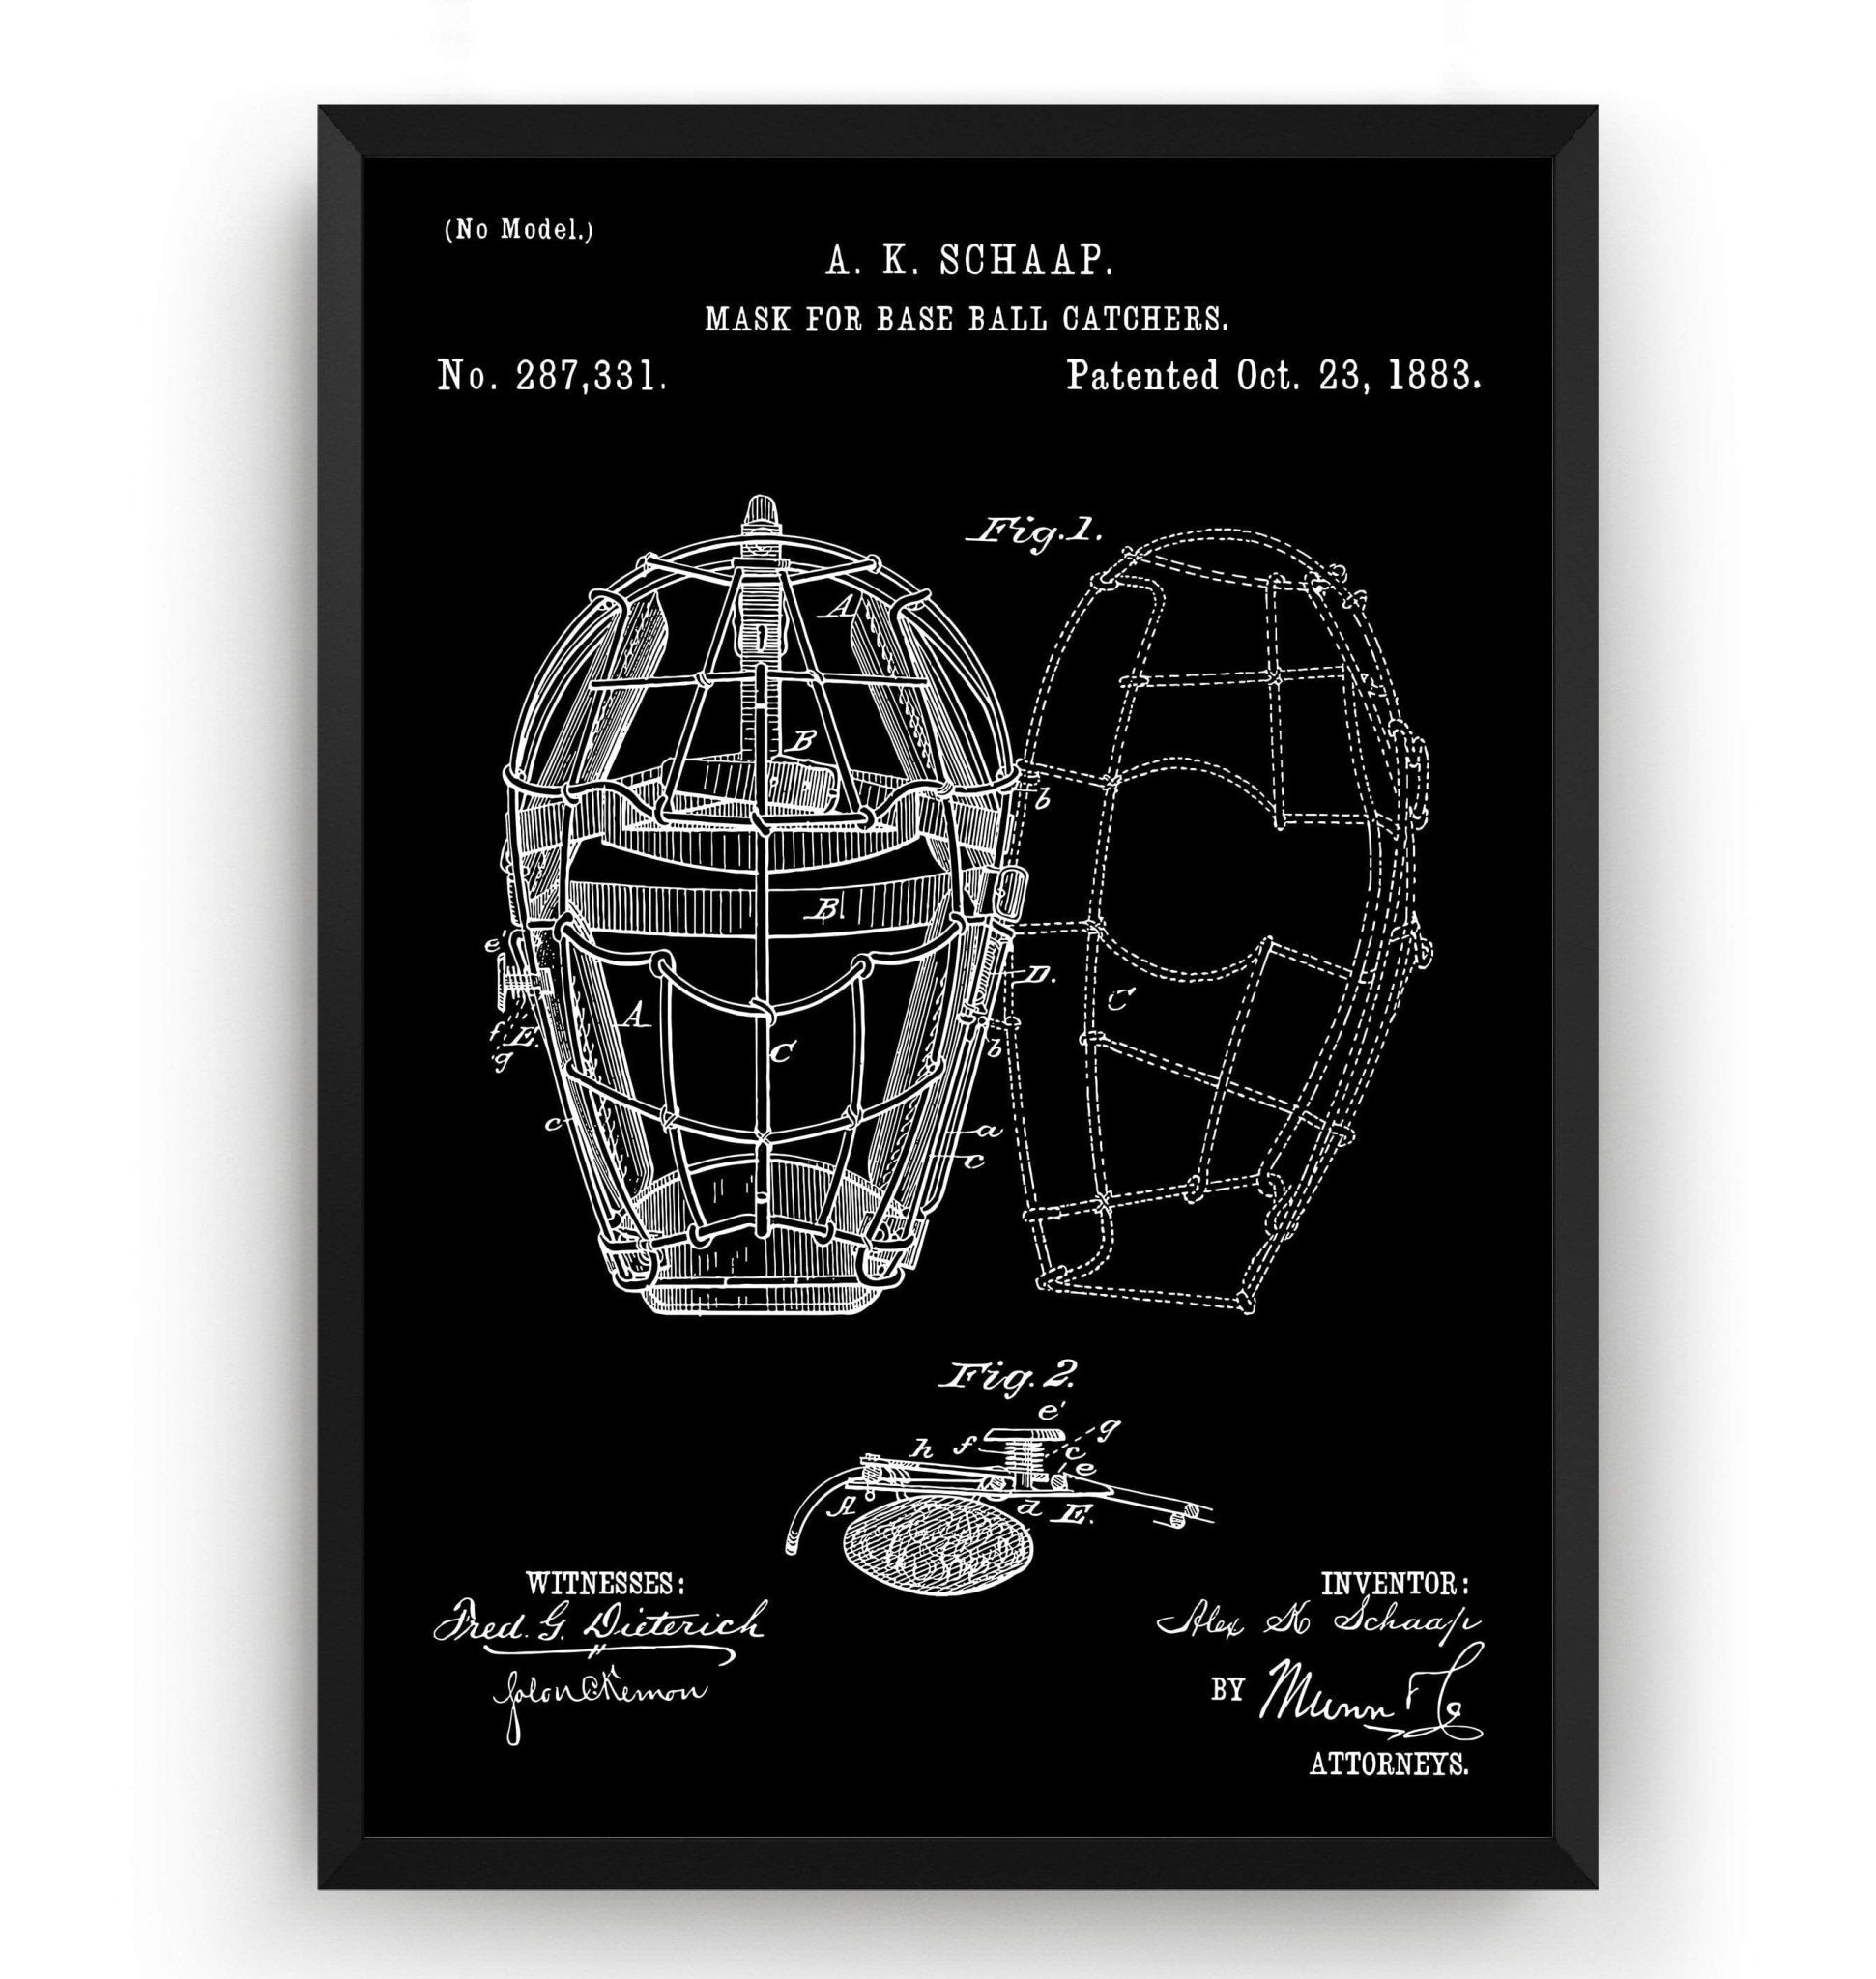 Baseball Catchers Mask 1883 Patent Print - Magic Posters